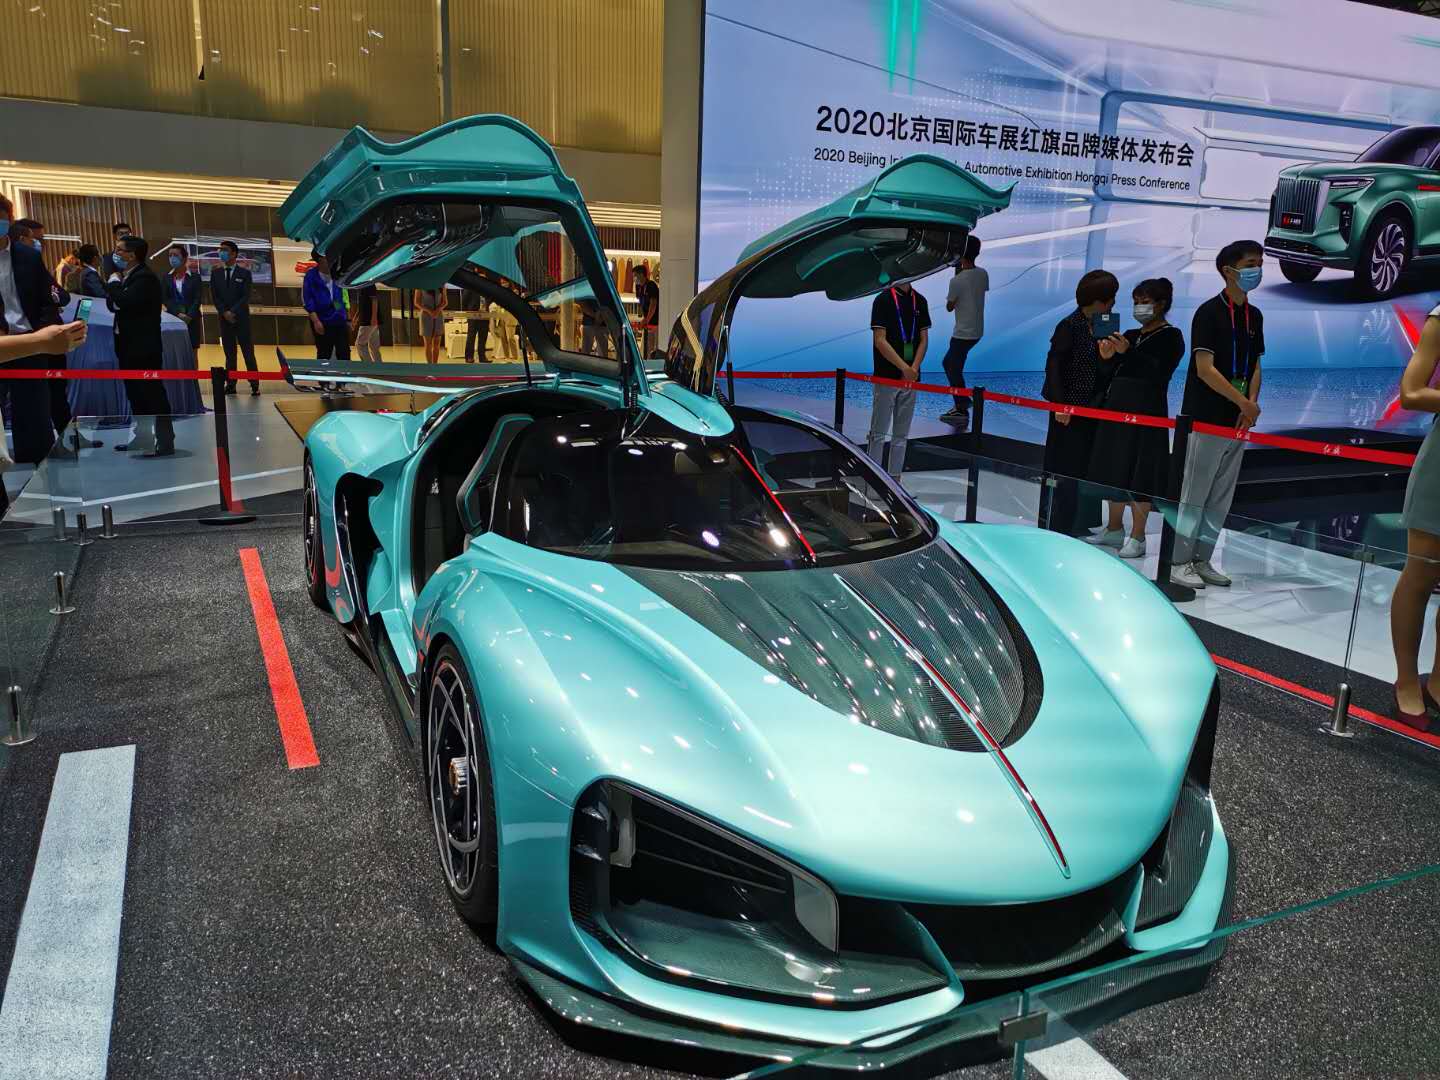 一锤定音:北京车展是今年全球最重要的顶级车展_汽车